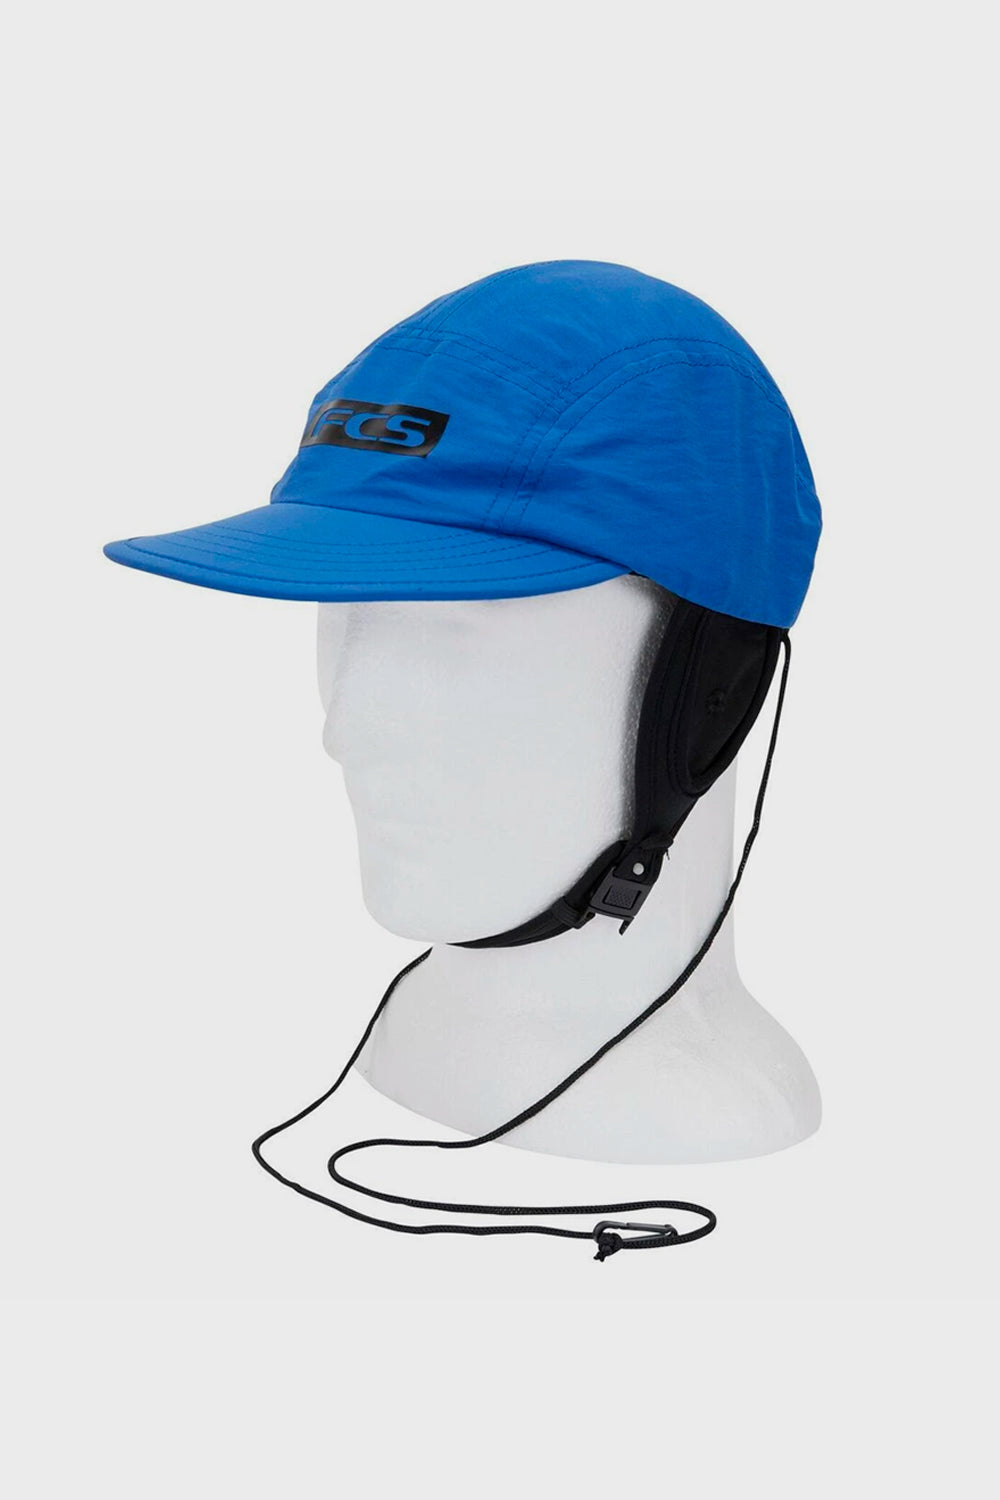 
                  
                    Pukas Surf Shop - FCS - Essential surf cap hat - Heather Blue
                  
                